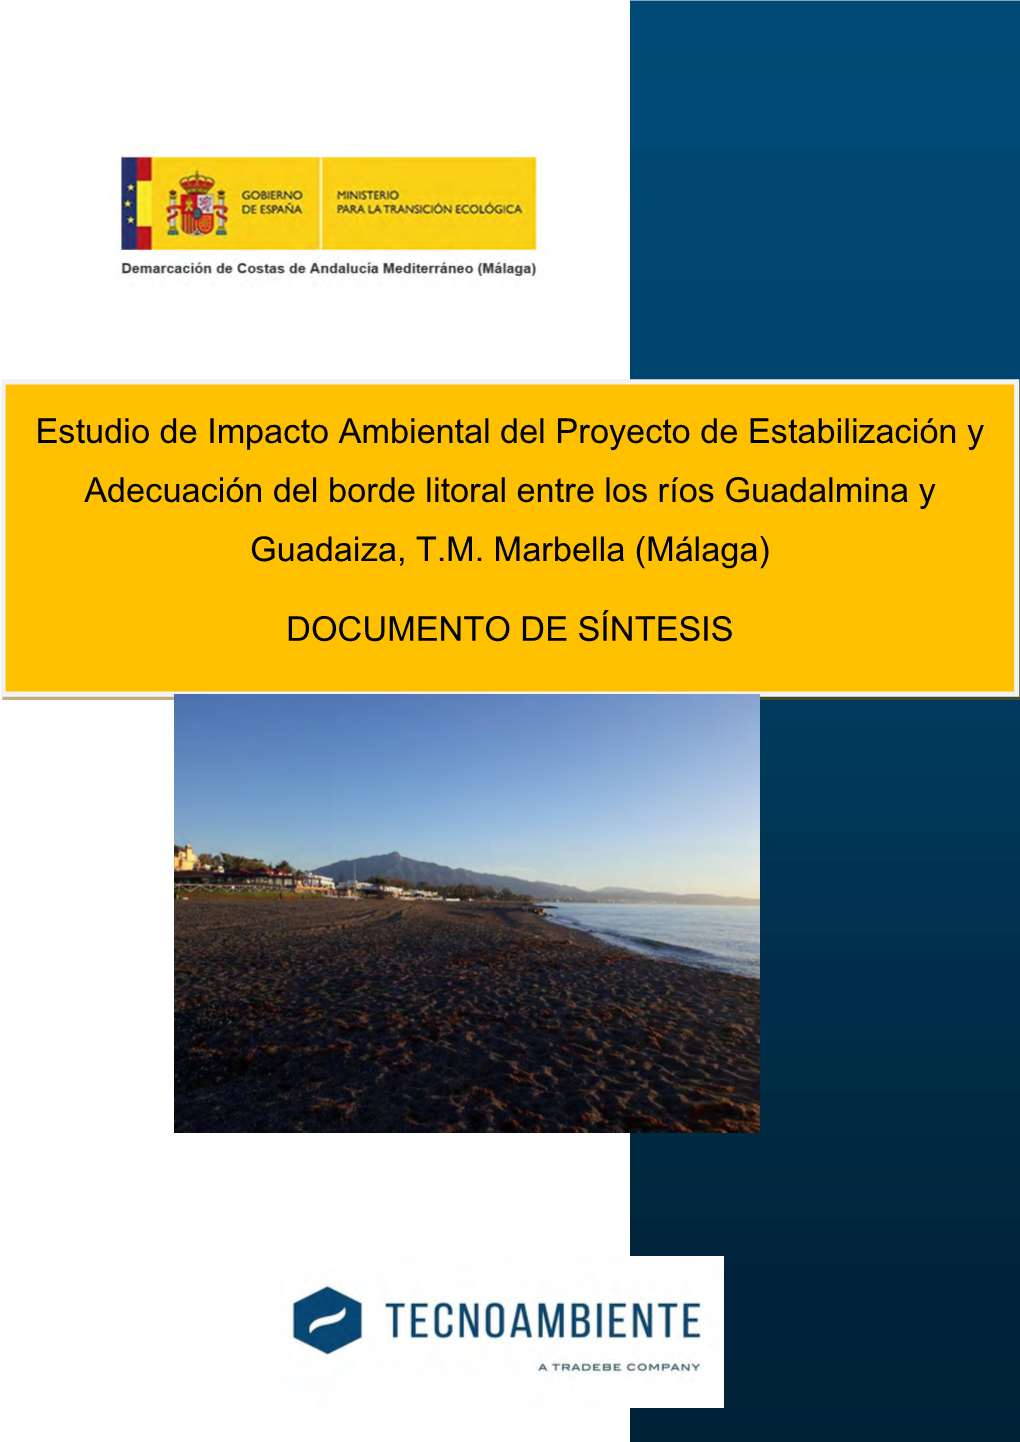 Estudio De Impacto Ambiental Del Proyecto De Estabilización Y Adecuación Del Borde Litoral Entre Los Ríos Guadalmina Y Guadaiza, T.M